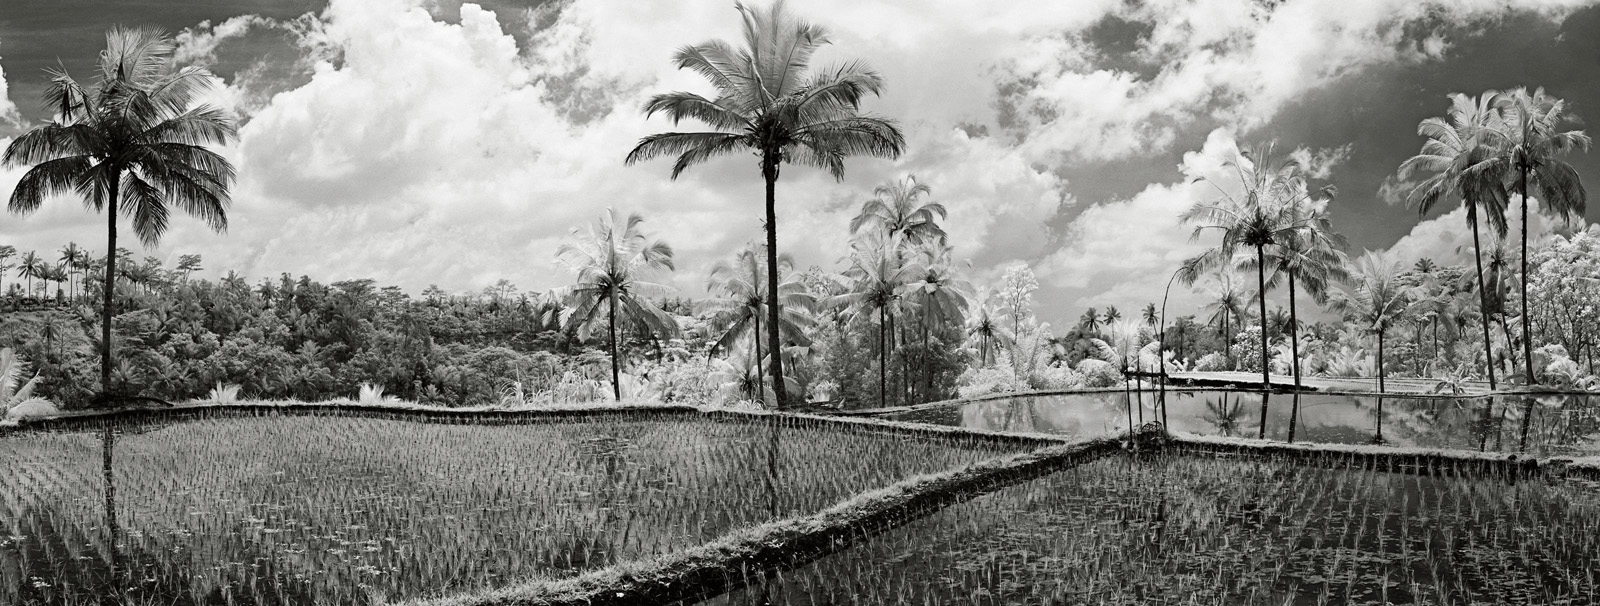 Dramatic Rice Fields, Palms, and Sky Ubud, Bali.